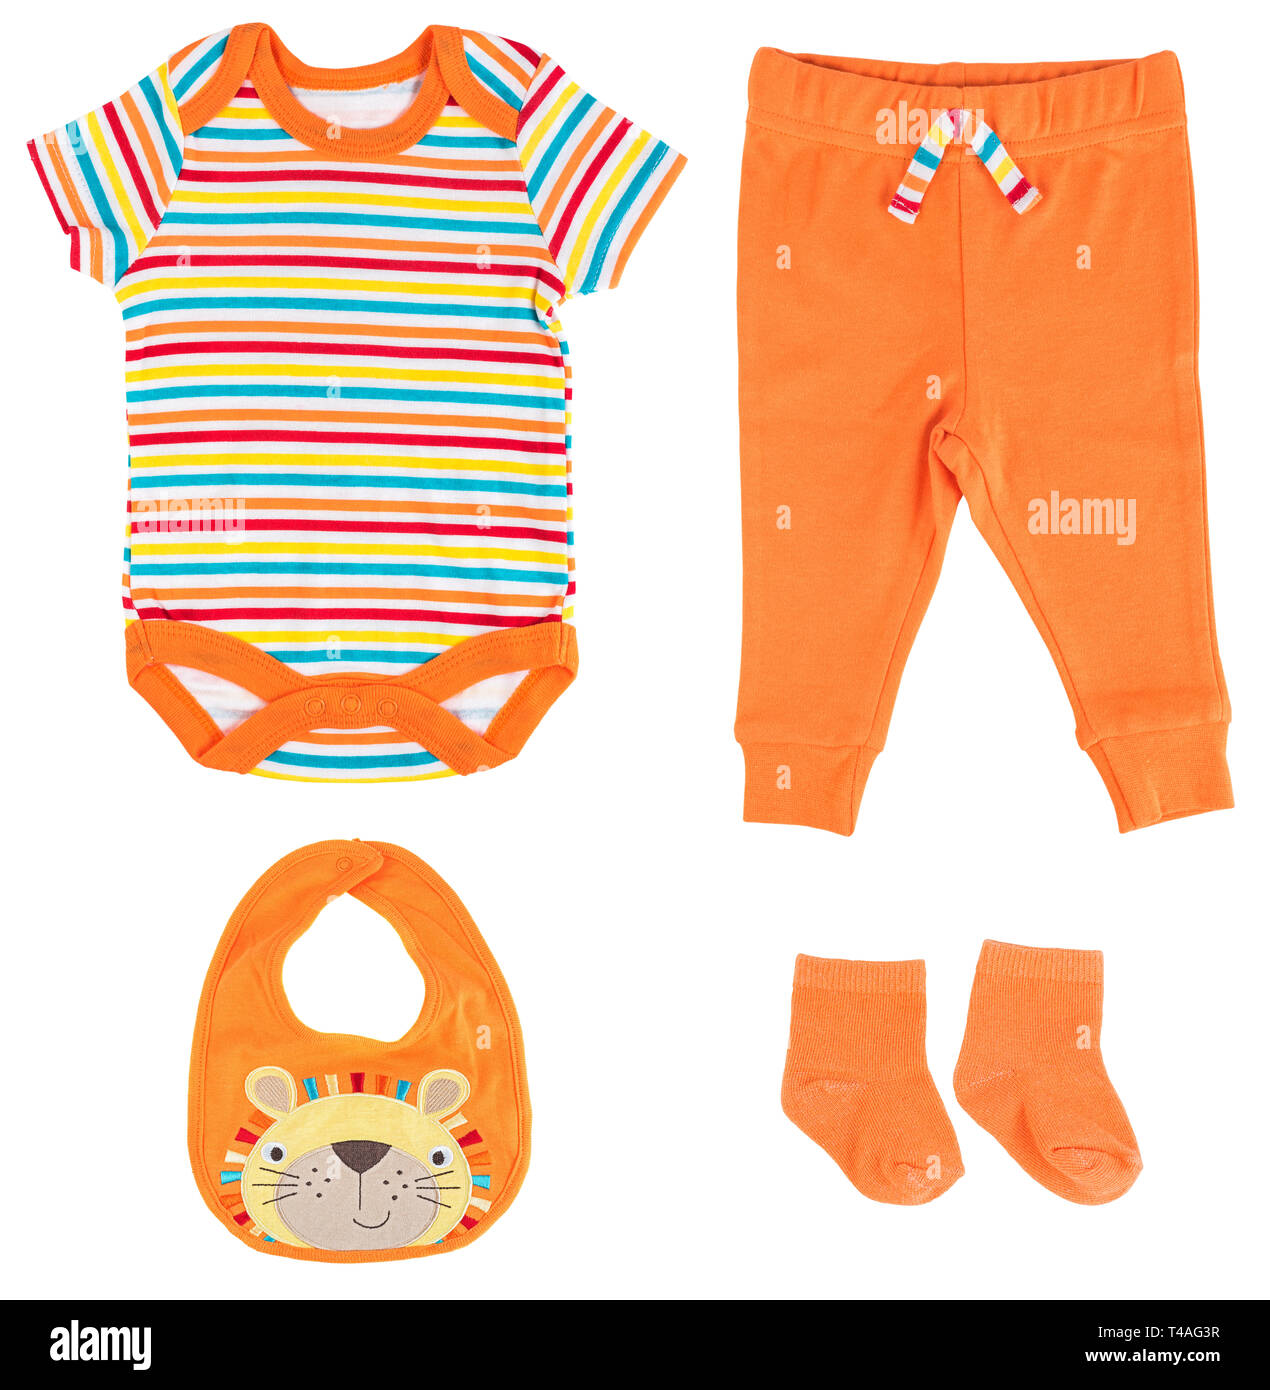 Vestiti del bambino isolato su sfondo bianco. Striped Multicolore corpo baby suit, tute, pantaloni, calze. Foto Stock